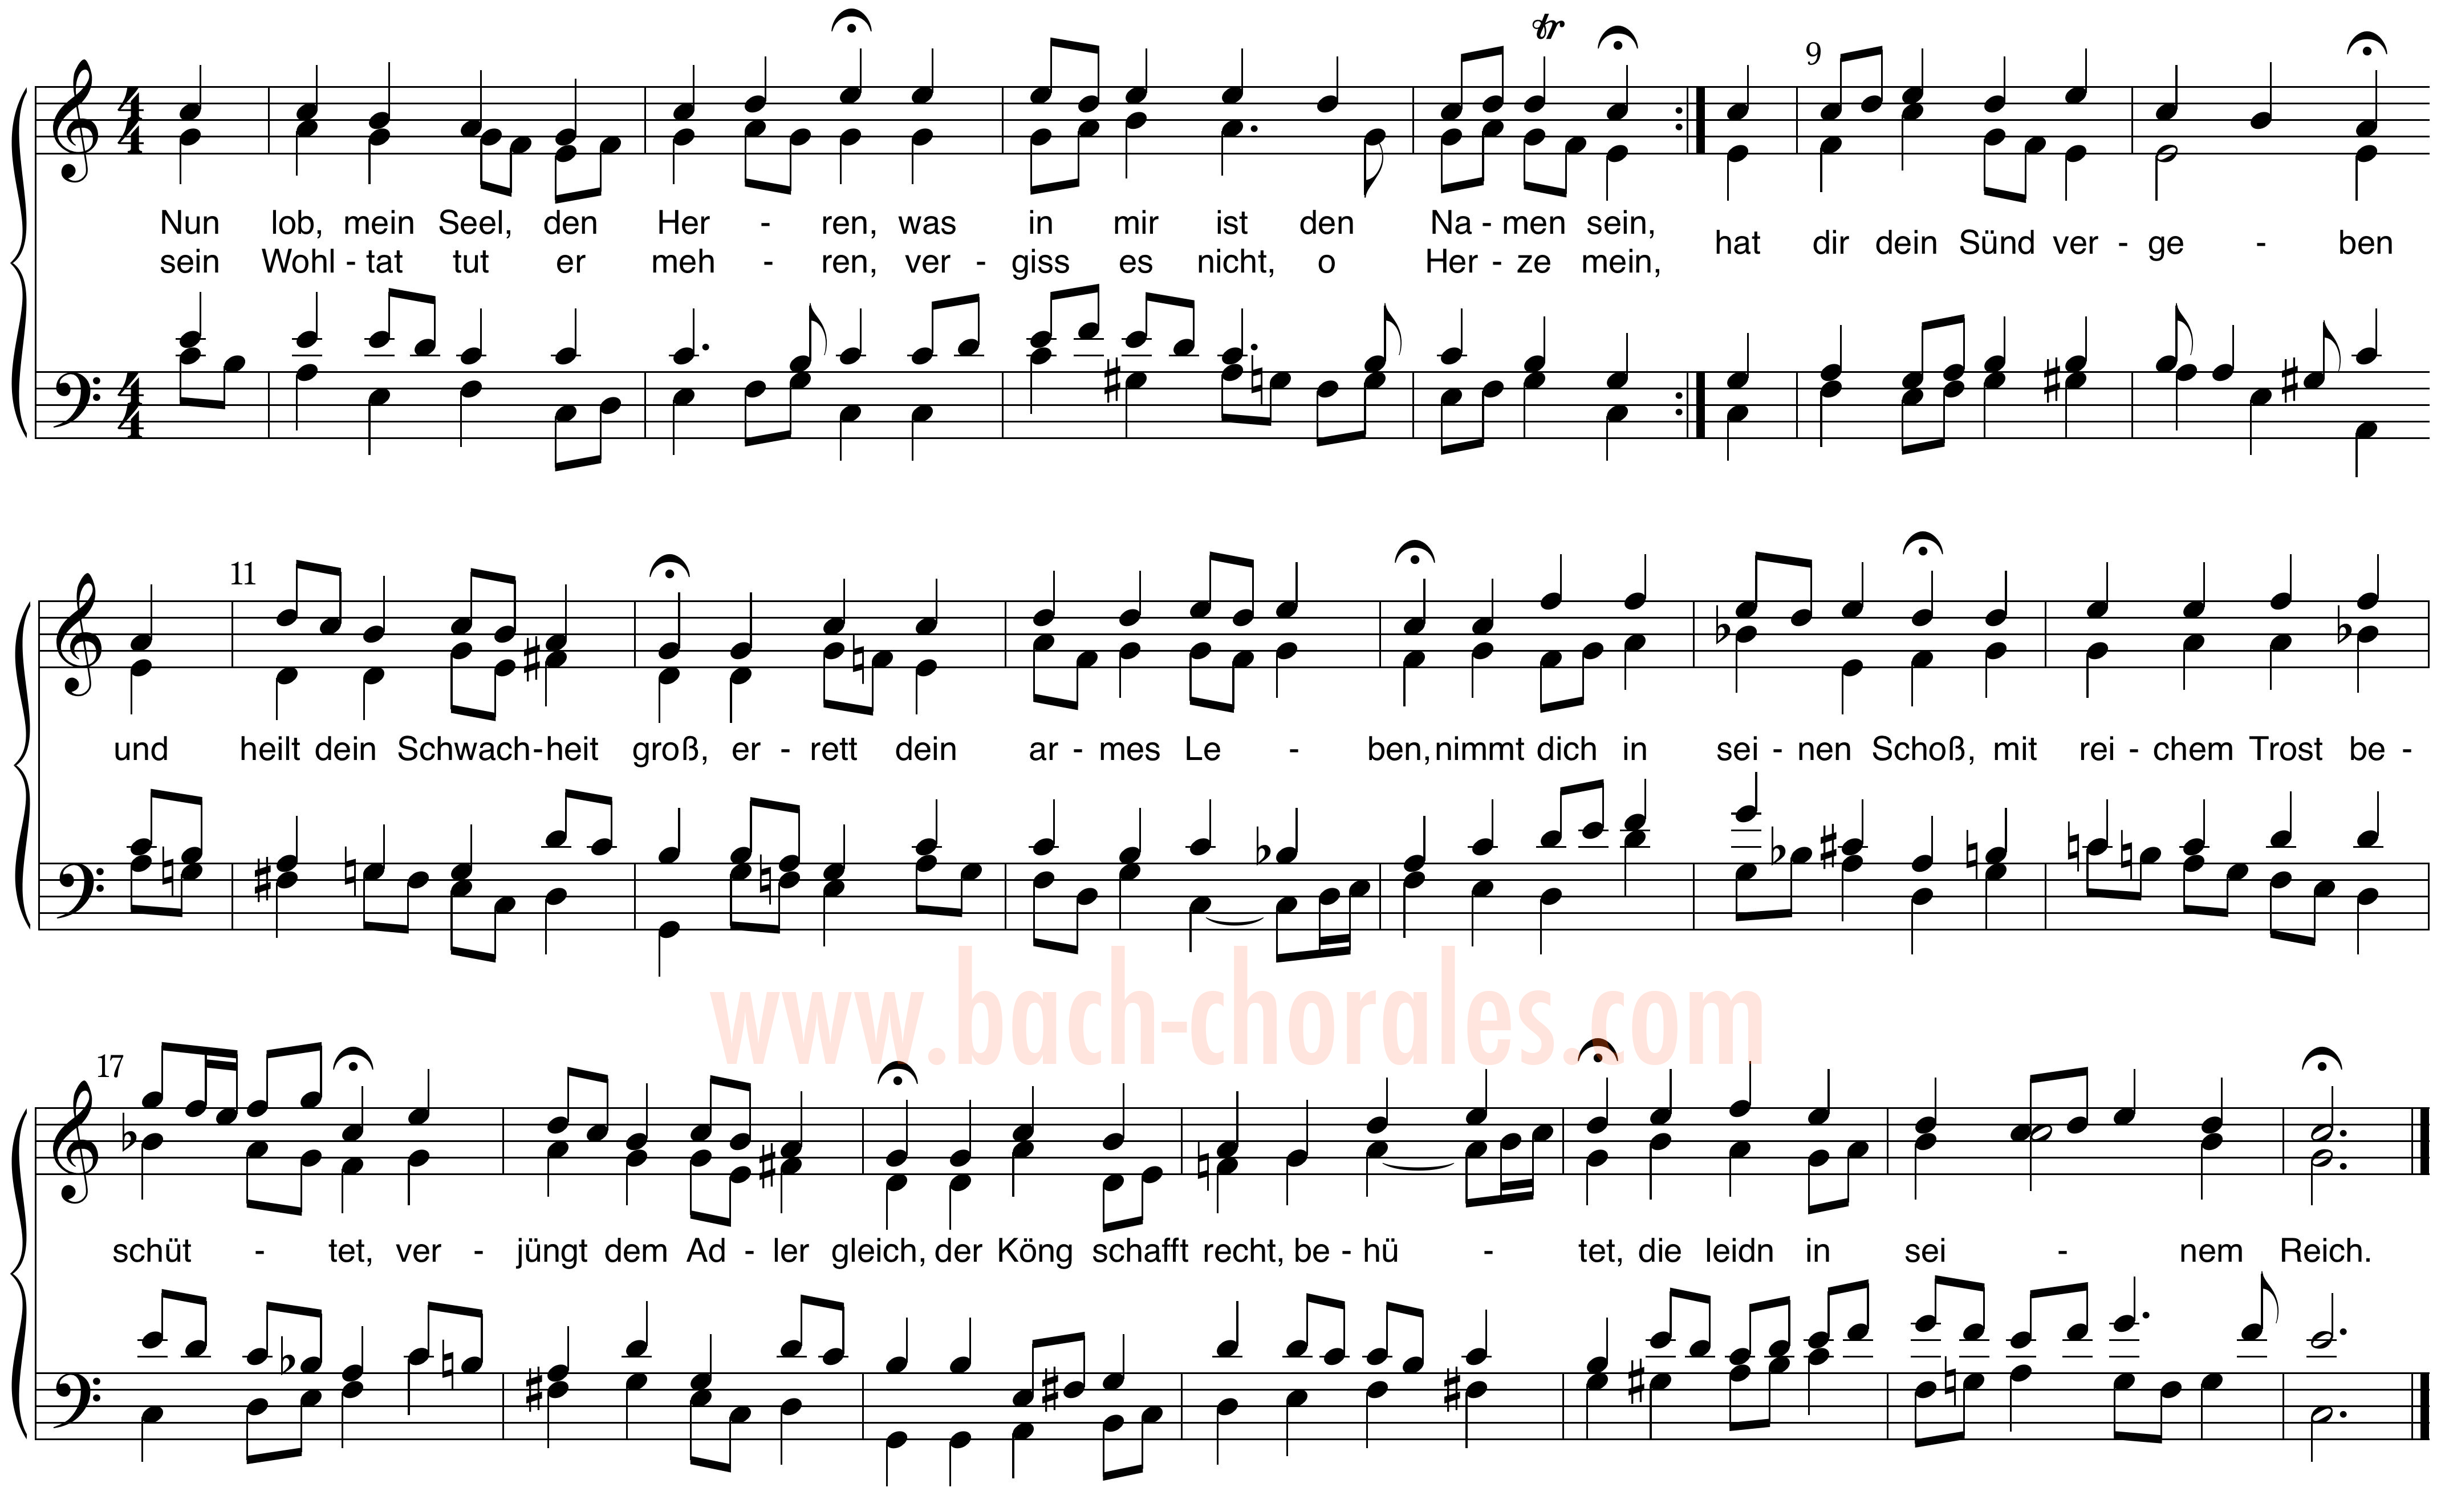 notenbeeld BWV 389 op https://www.bach-chorales.com/